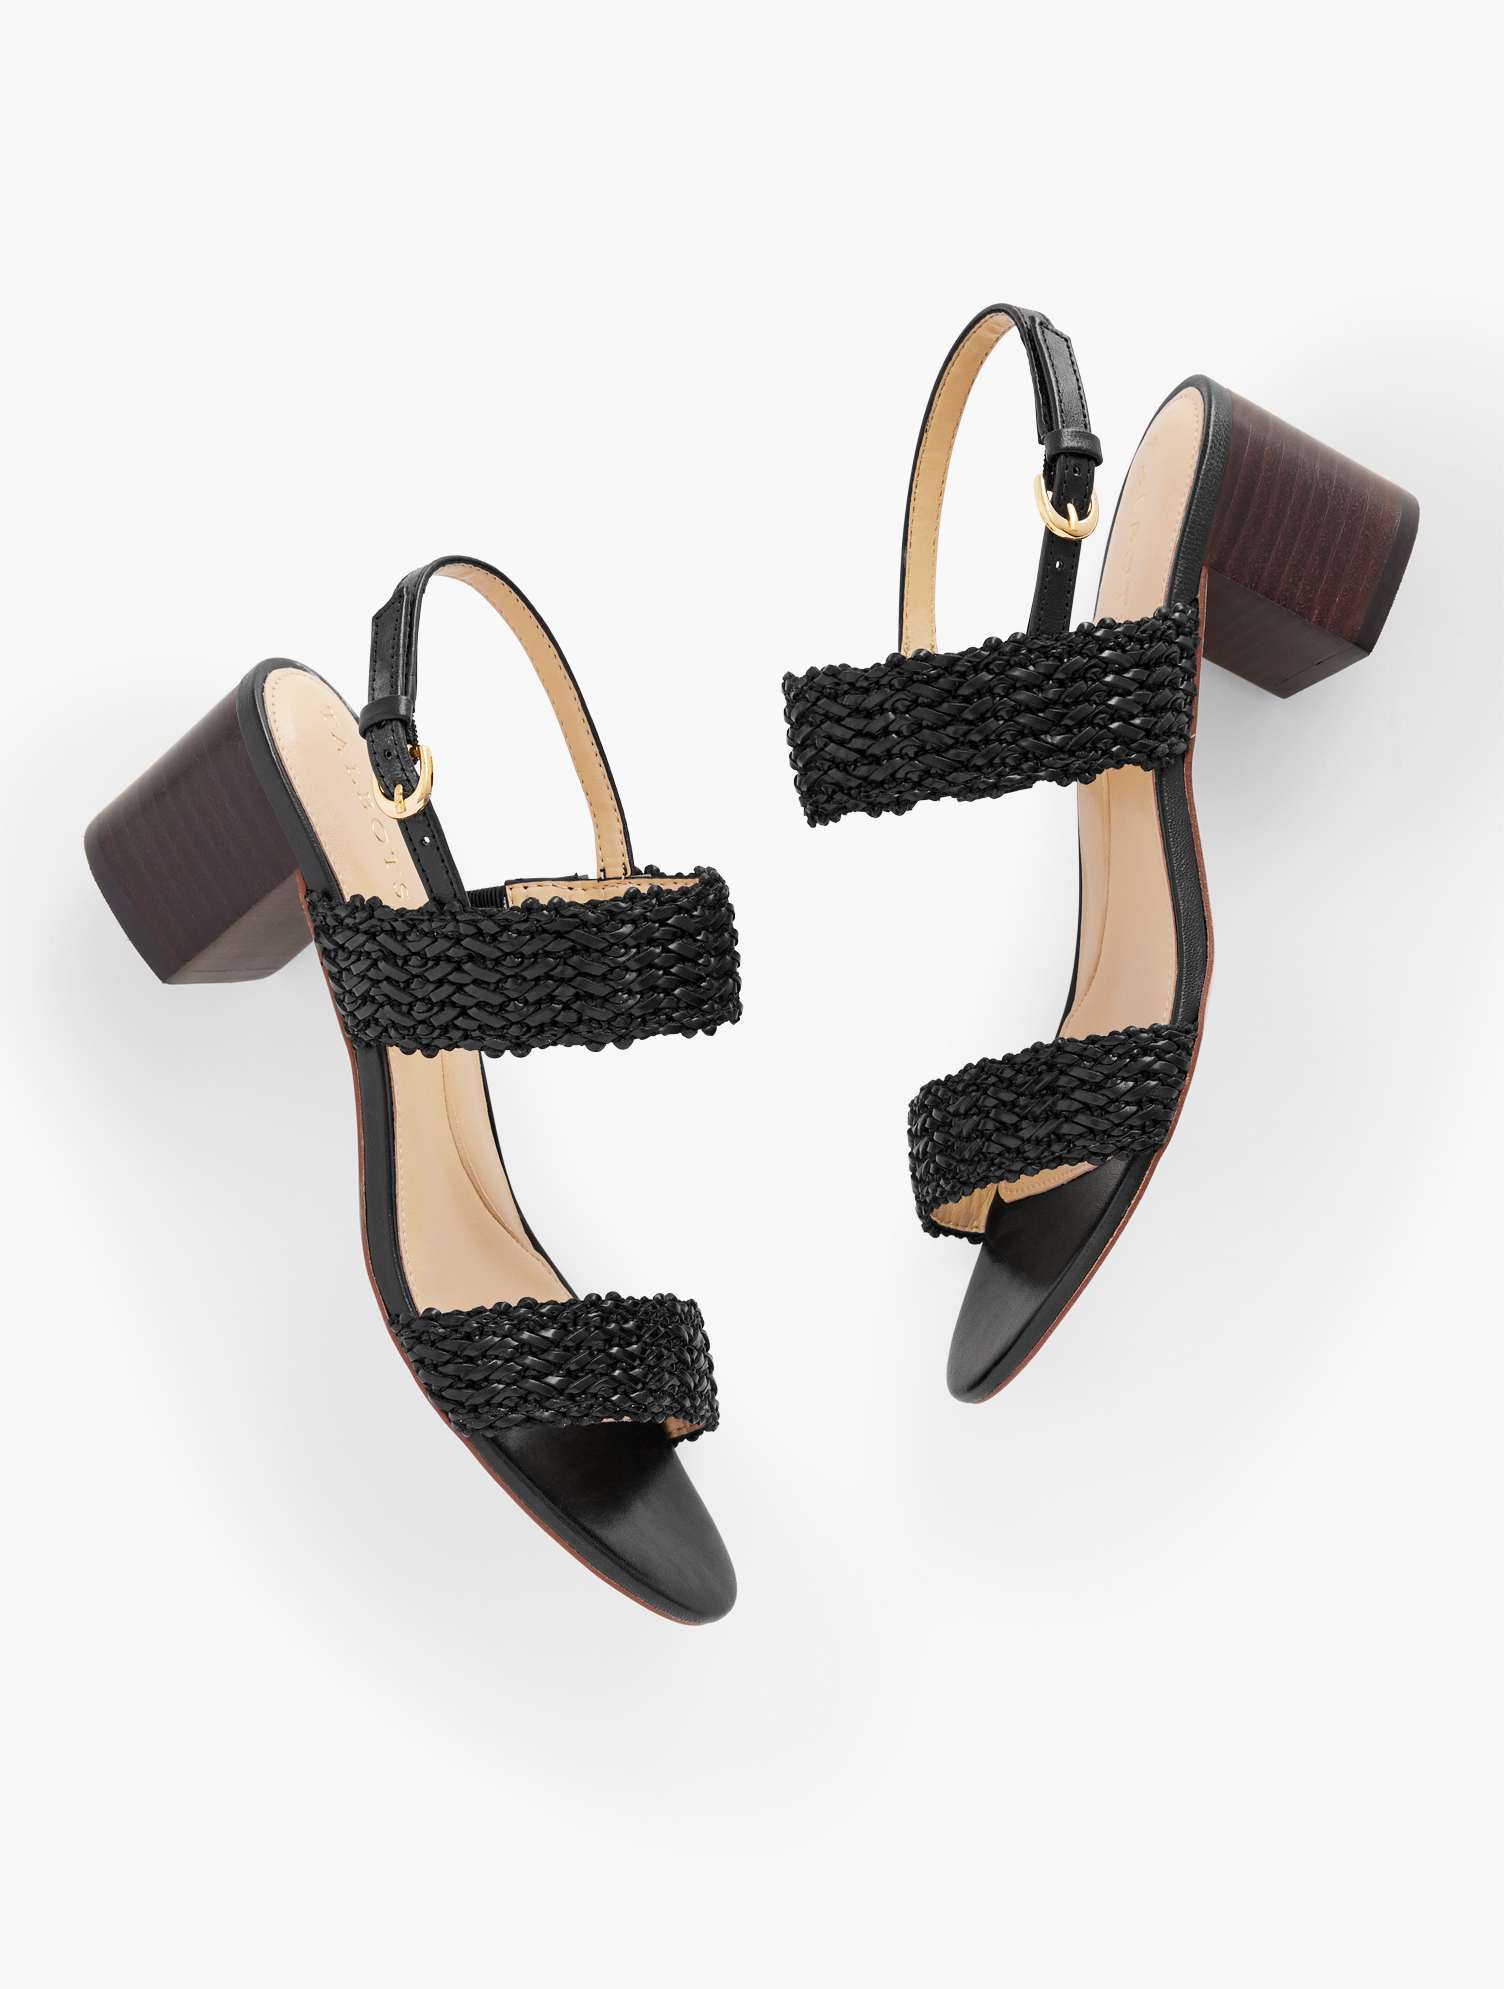 Talbots Mimi Woven Block Heel Sandals - Black - 9m